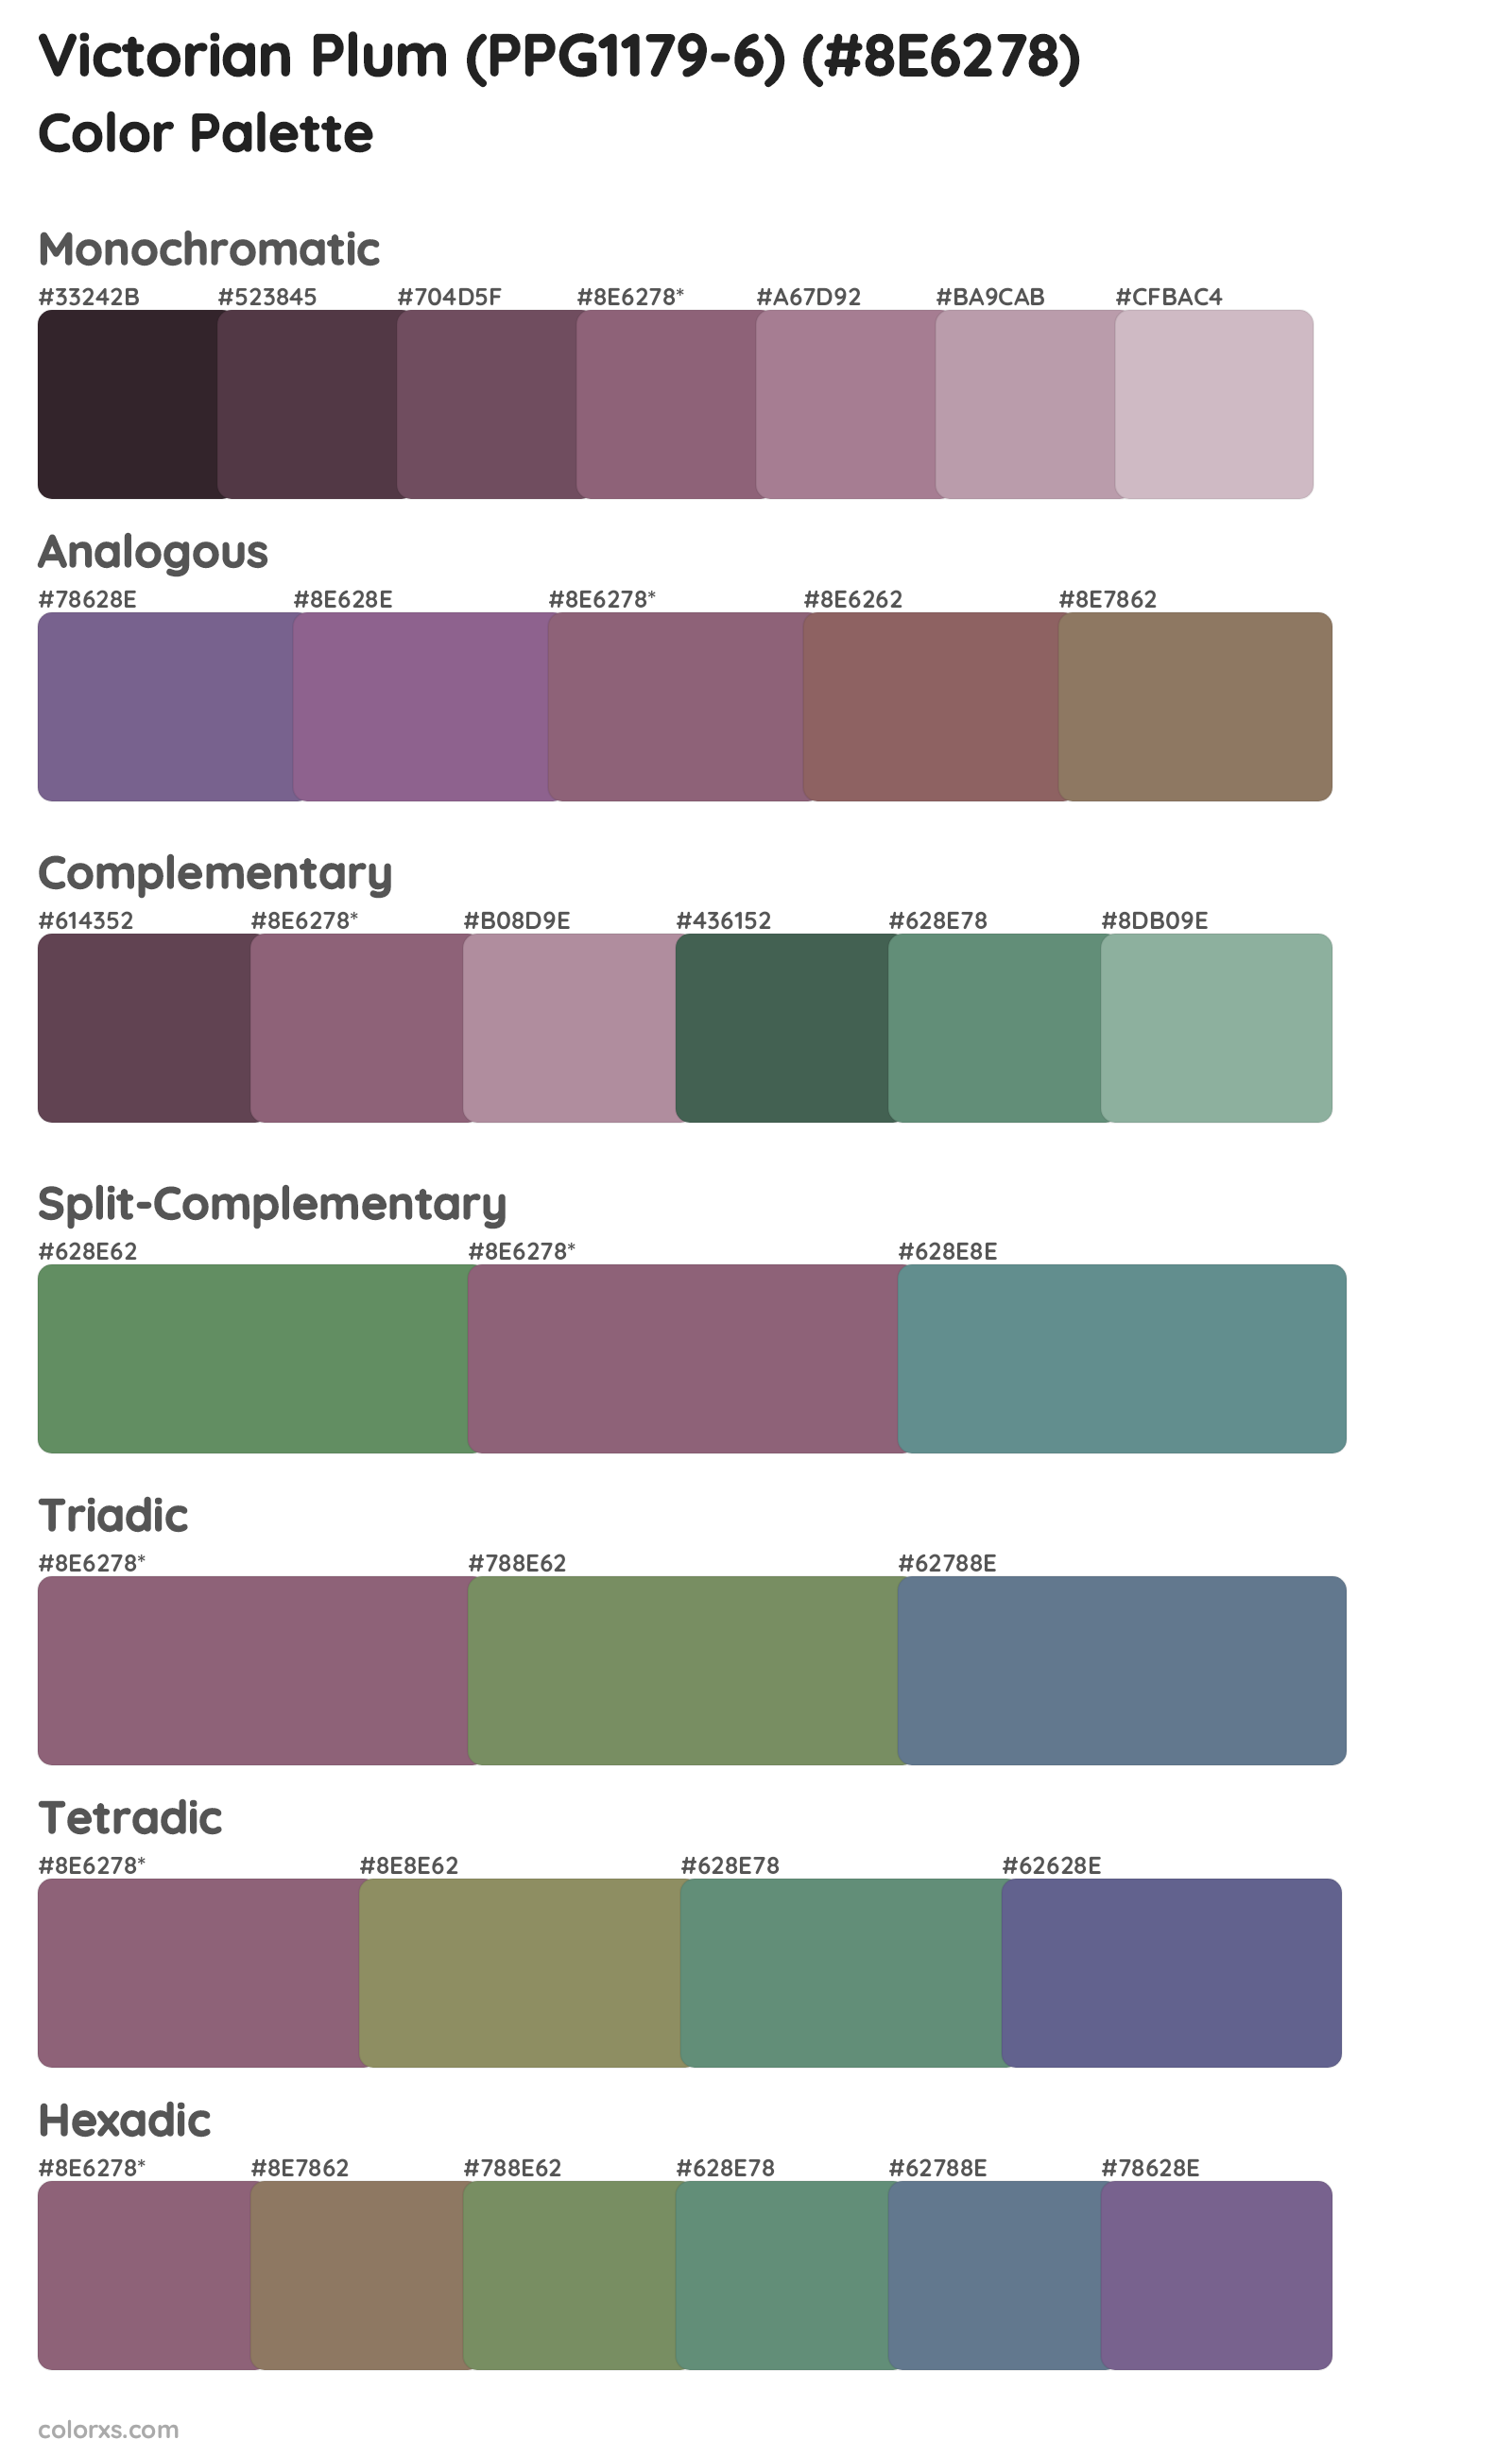 Victorian Plum (PPG1179-6) Color Scheme Palettes